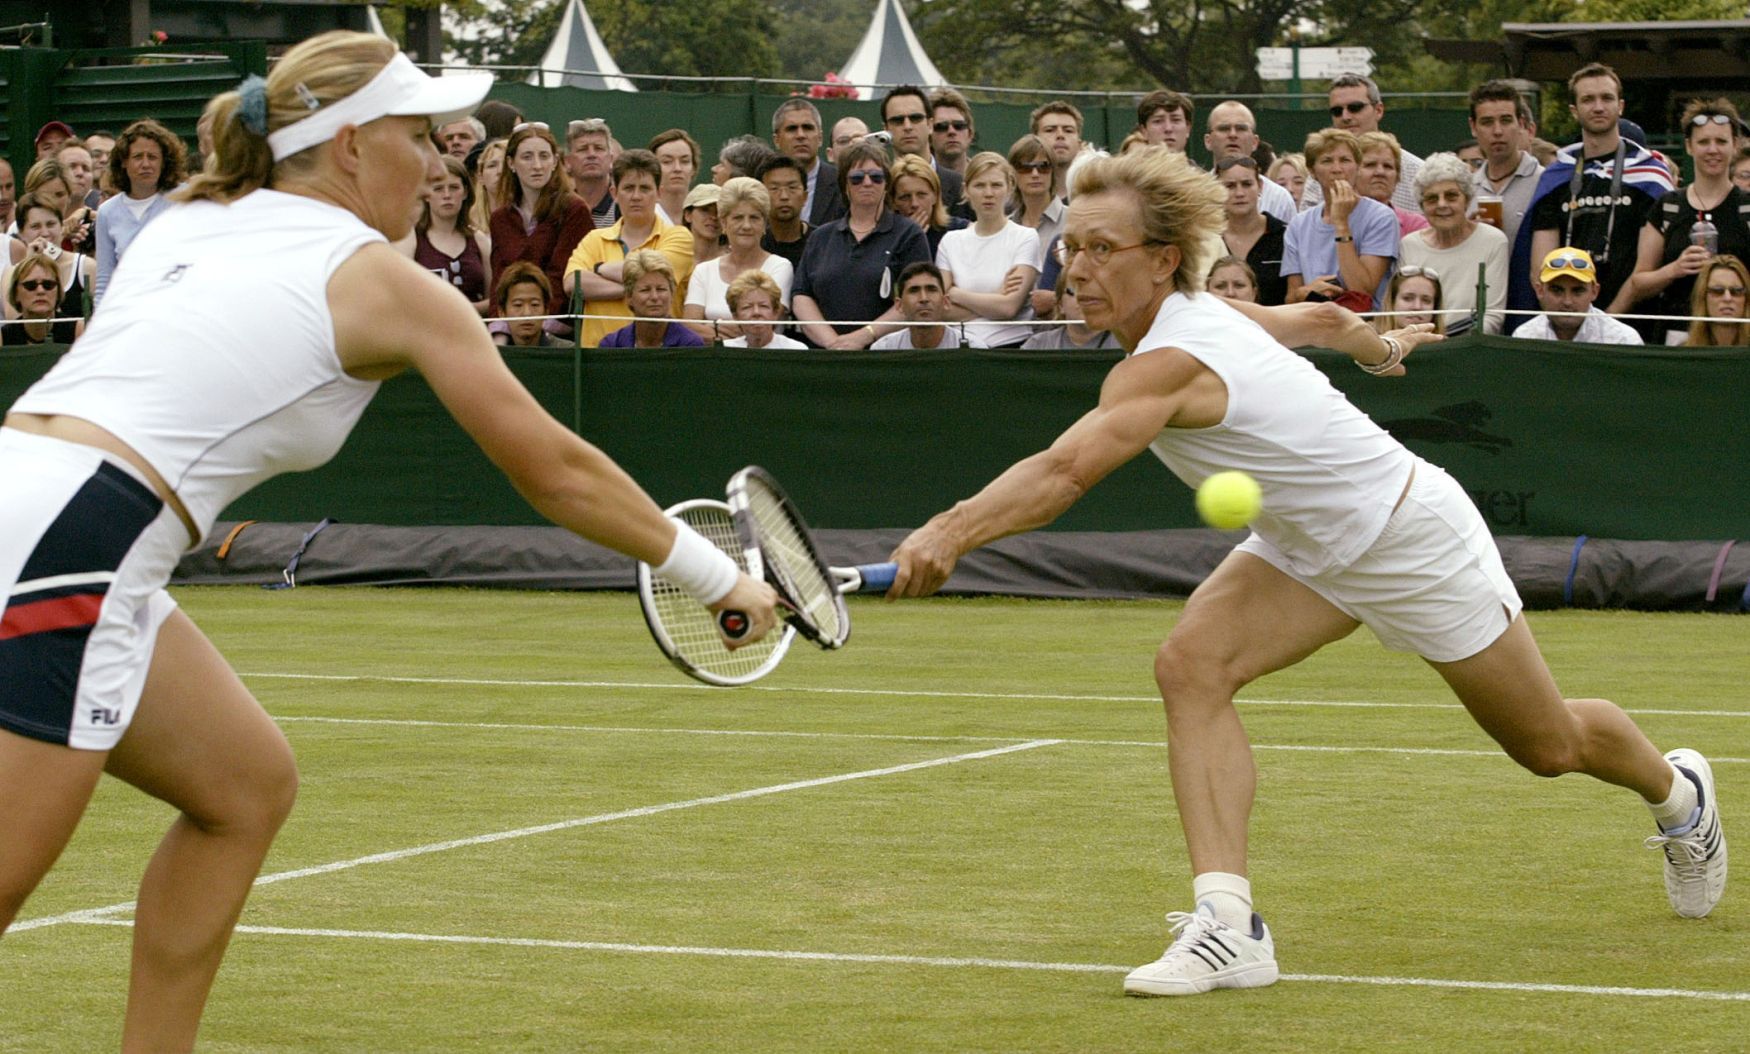 Martina Navrátilová, Wimbledon (2003, Světlana Kuzněcovová)